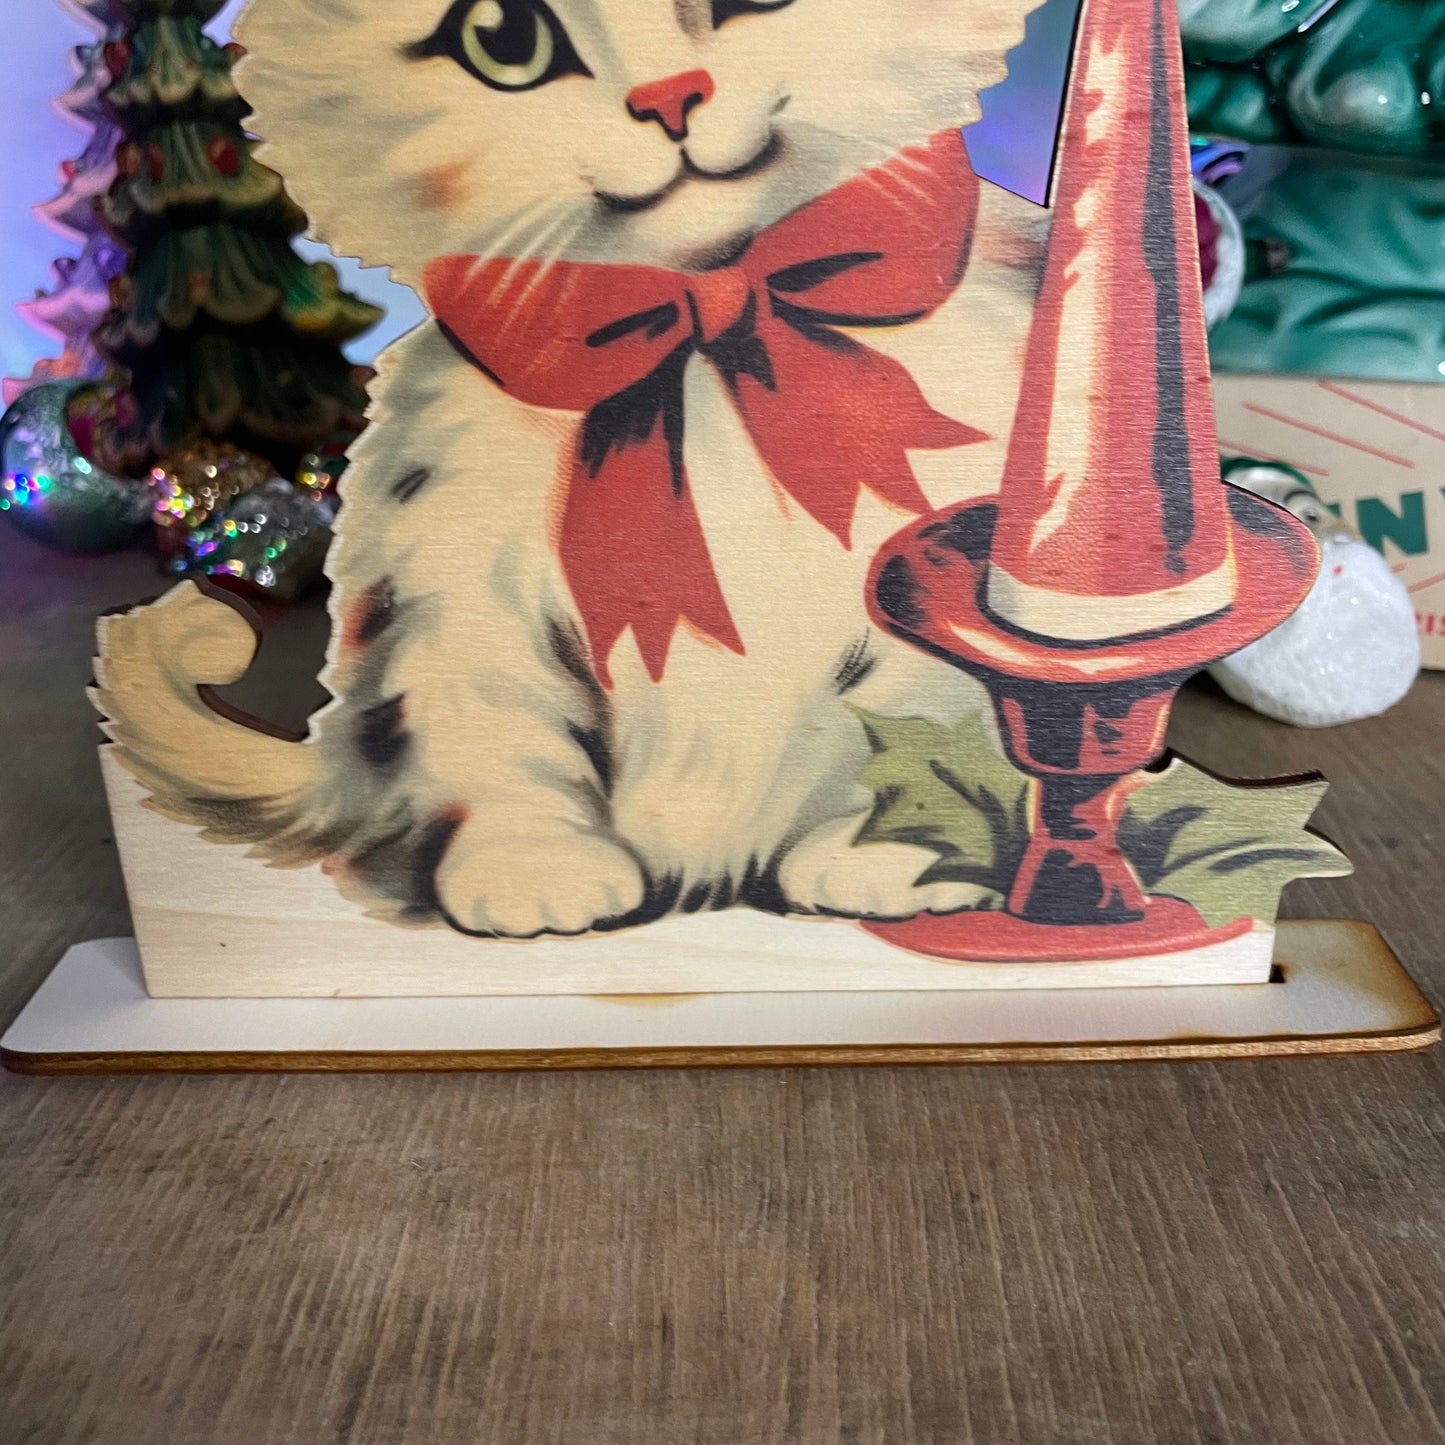 Vintage Christmas Cat Decoration wooden ornament, holiday decor, christmas decor laser cut unique Christmas